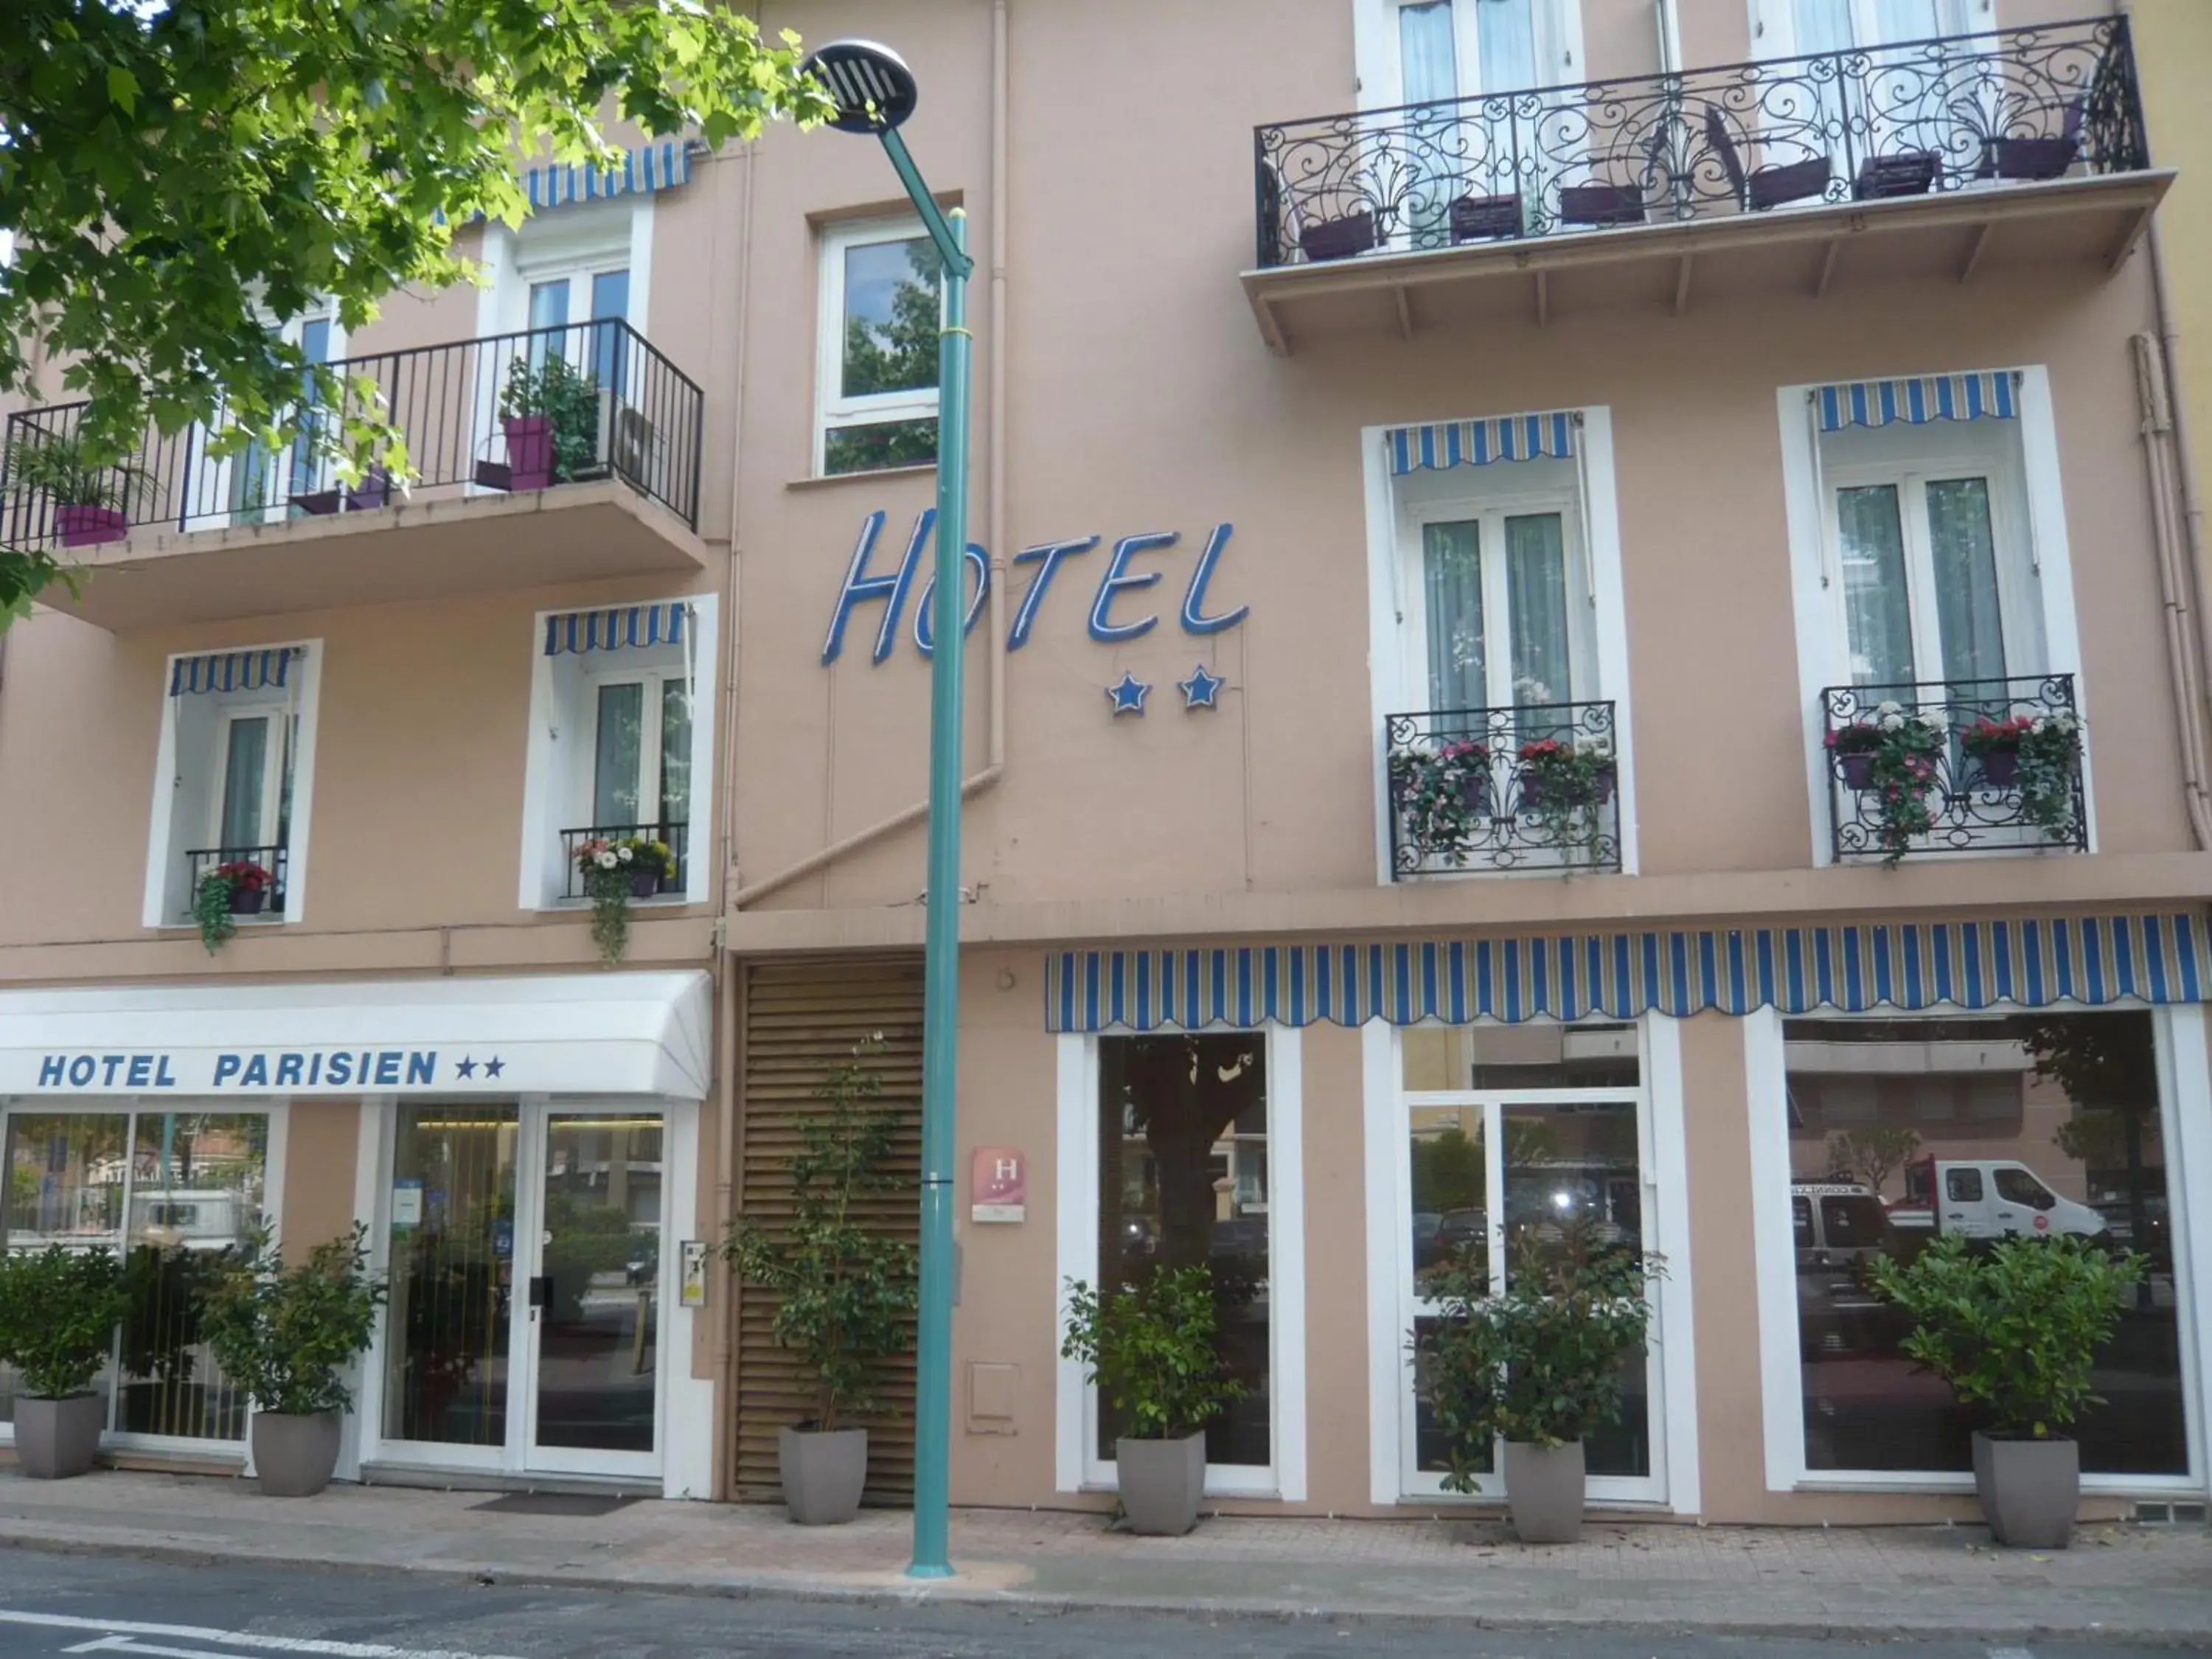 Facade/entrance, Property Building in Hotel Parisien